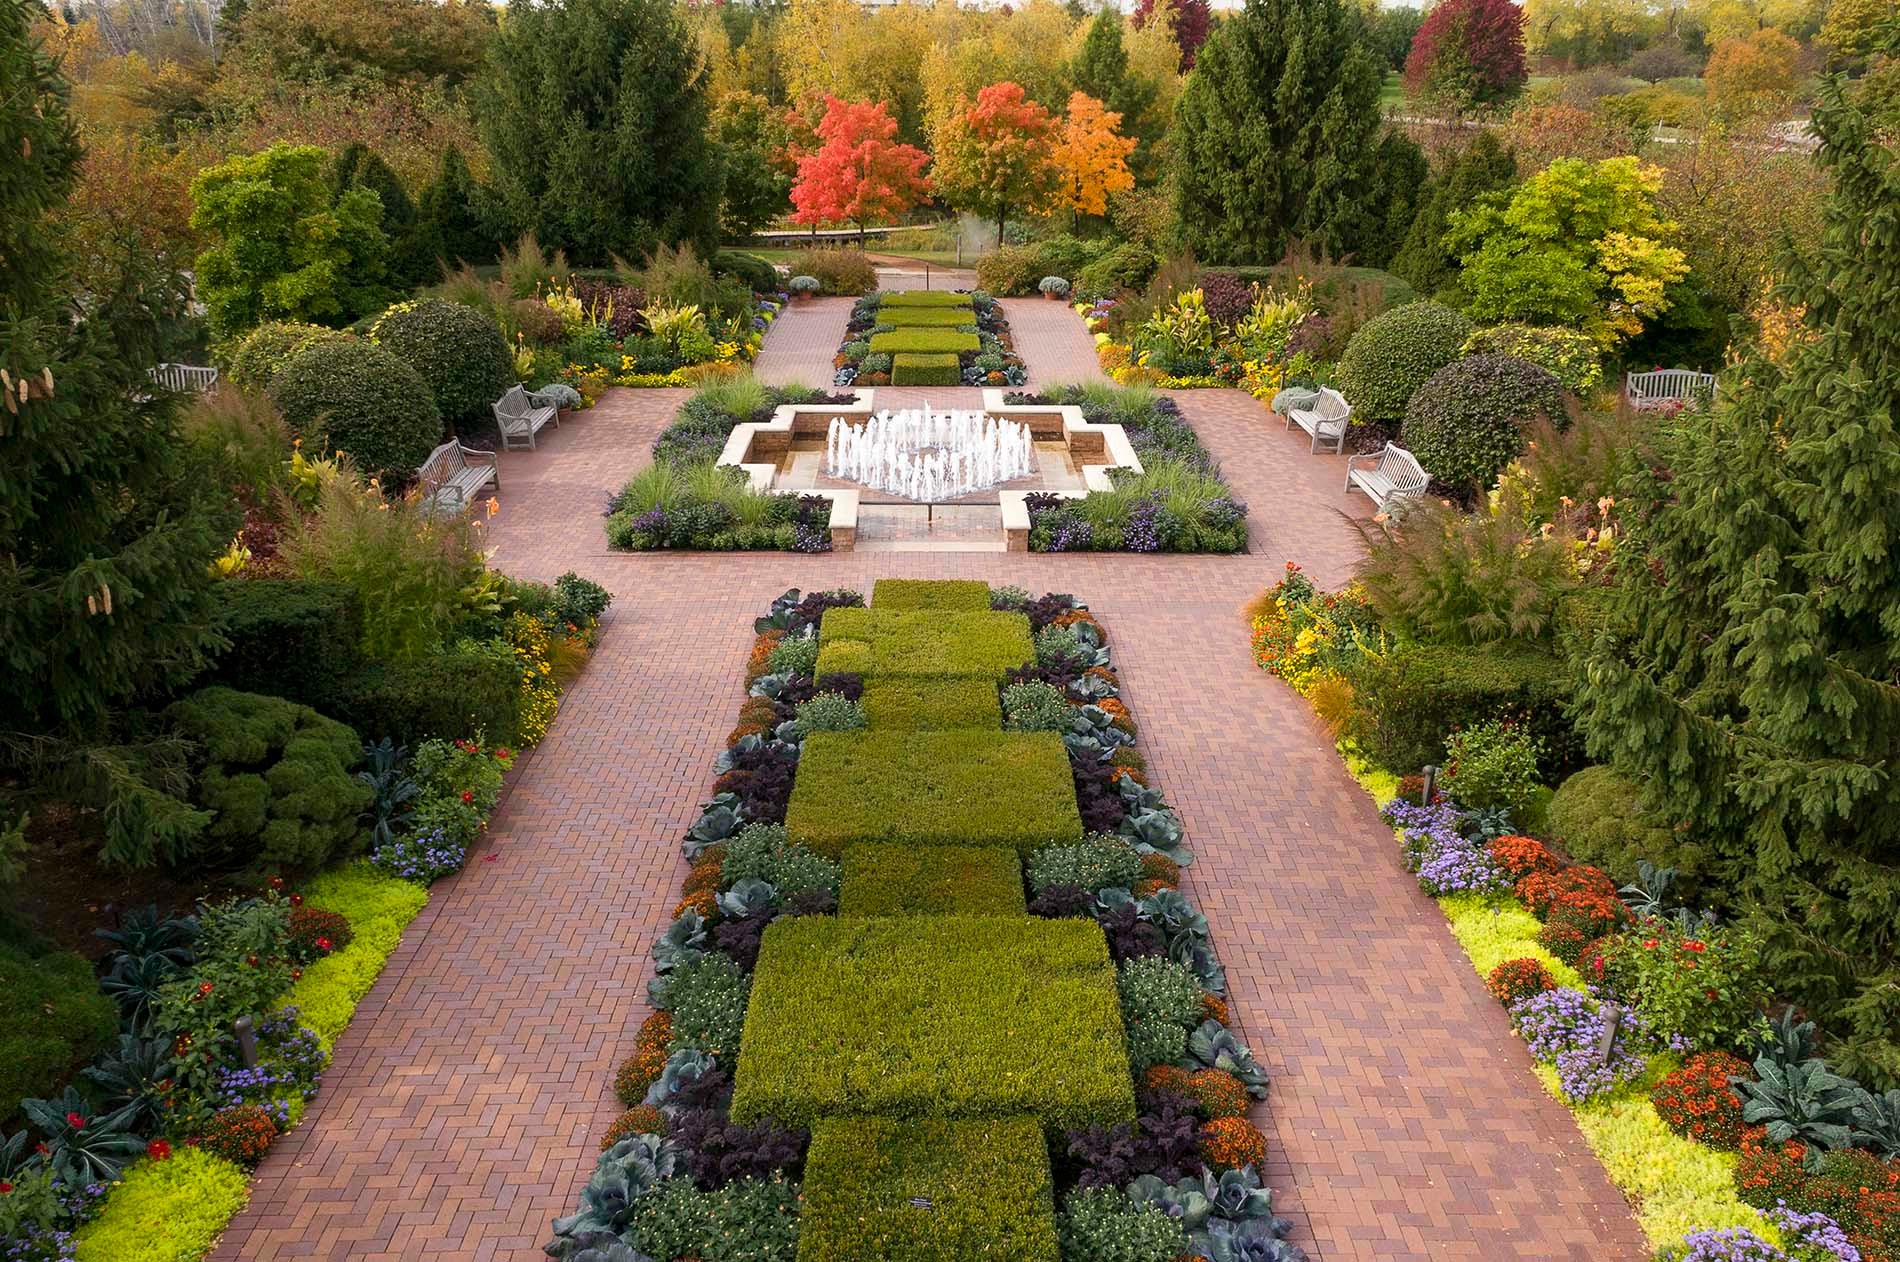 PHOTO: The Circle Garden at the Chicago Botanic Garden.